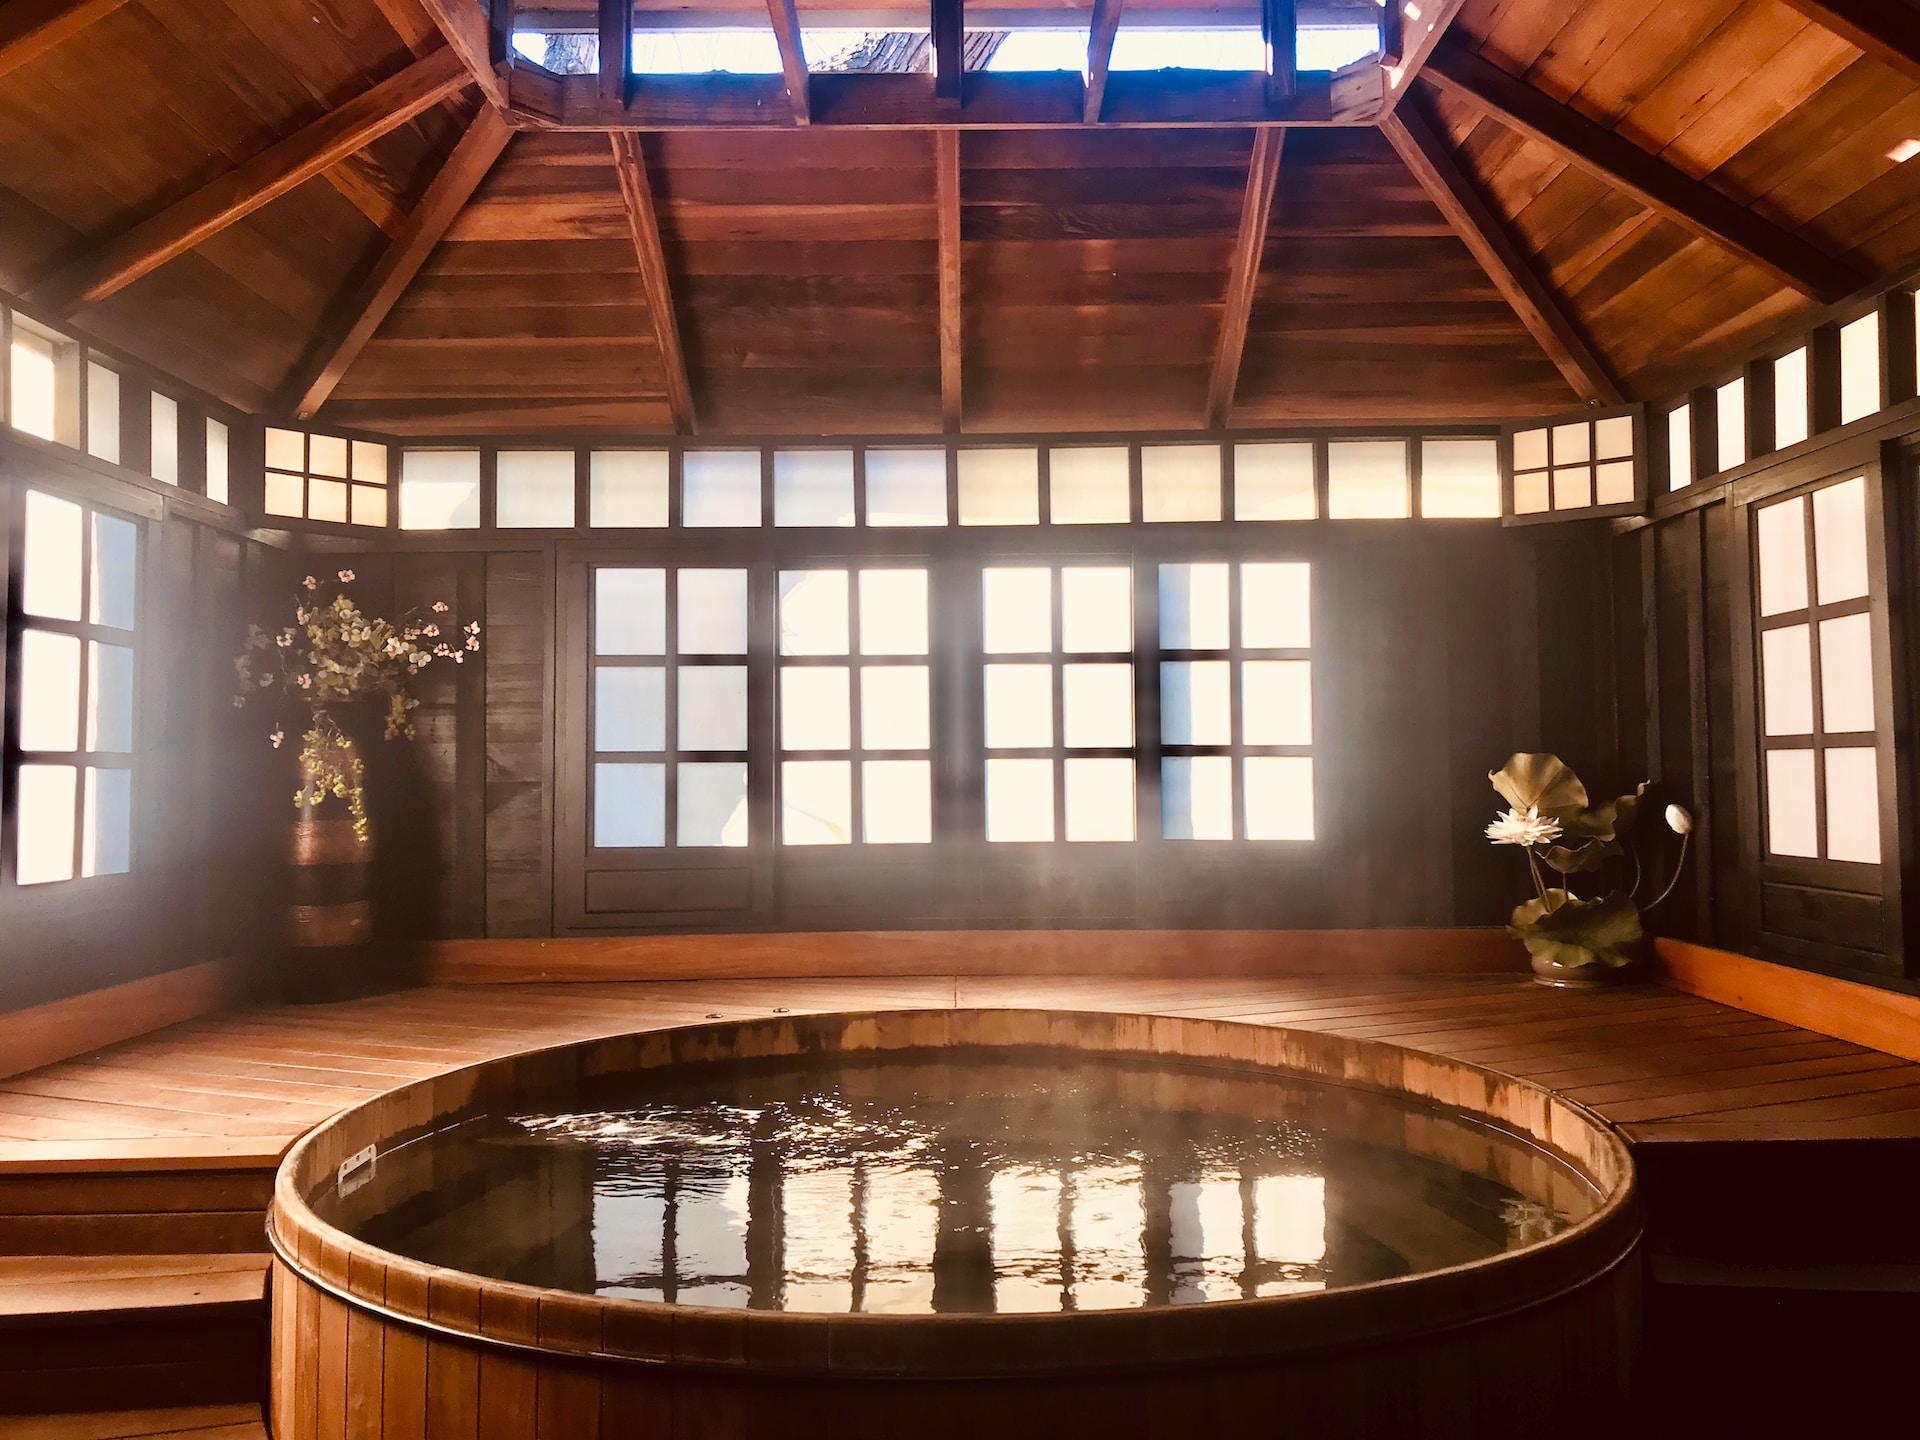 The inside of a hot spring inn